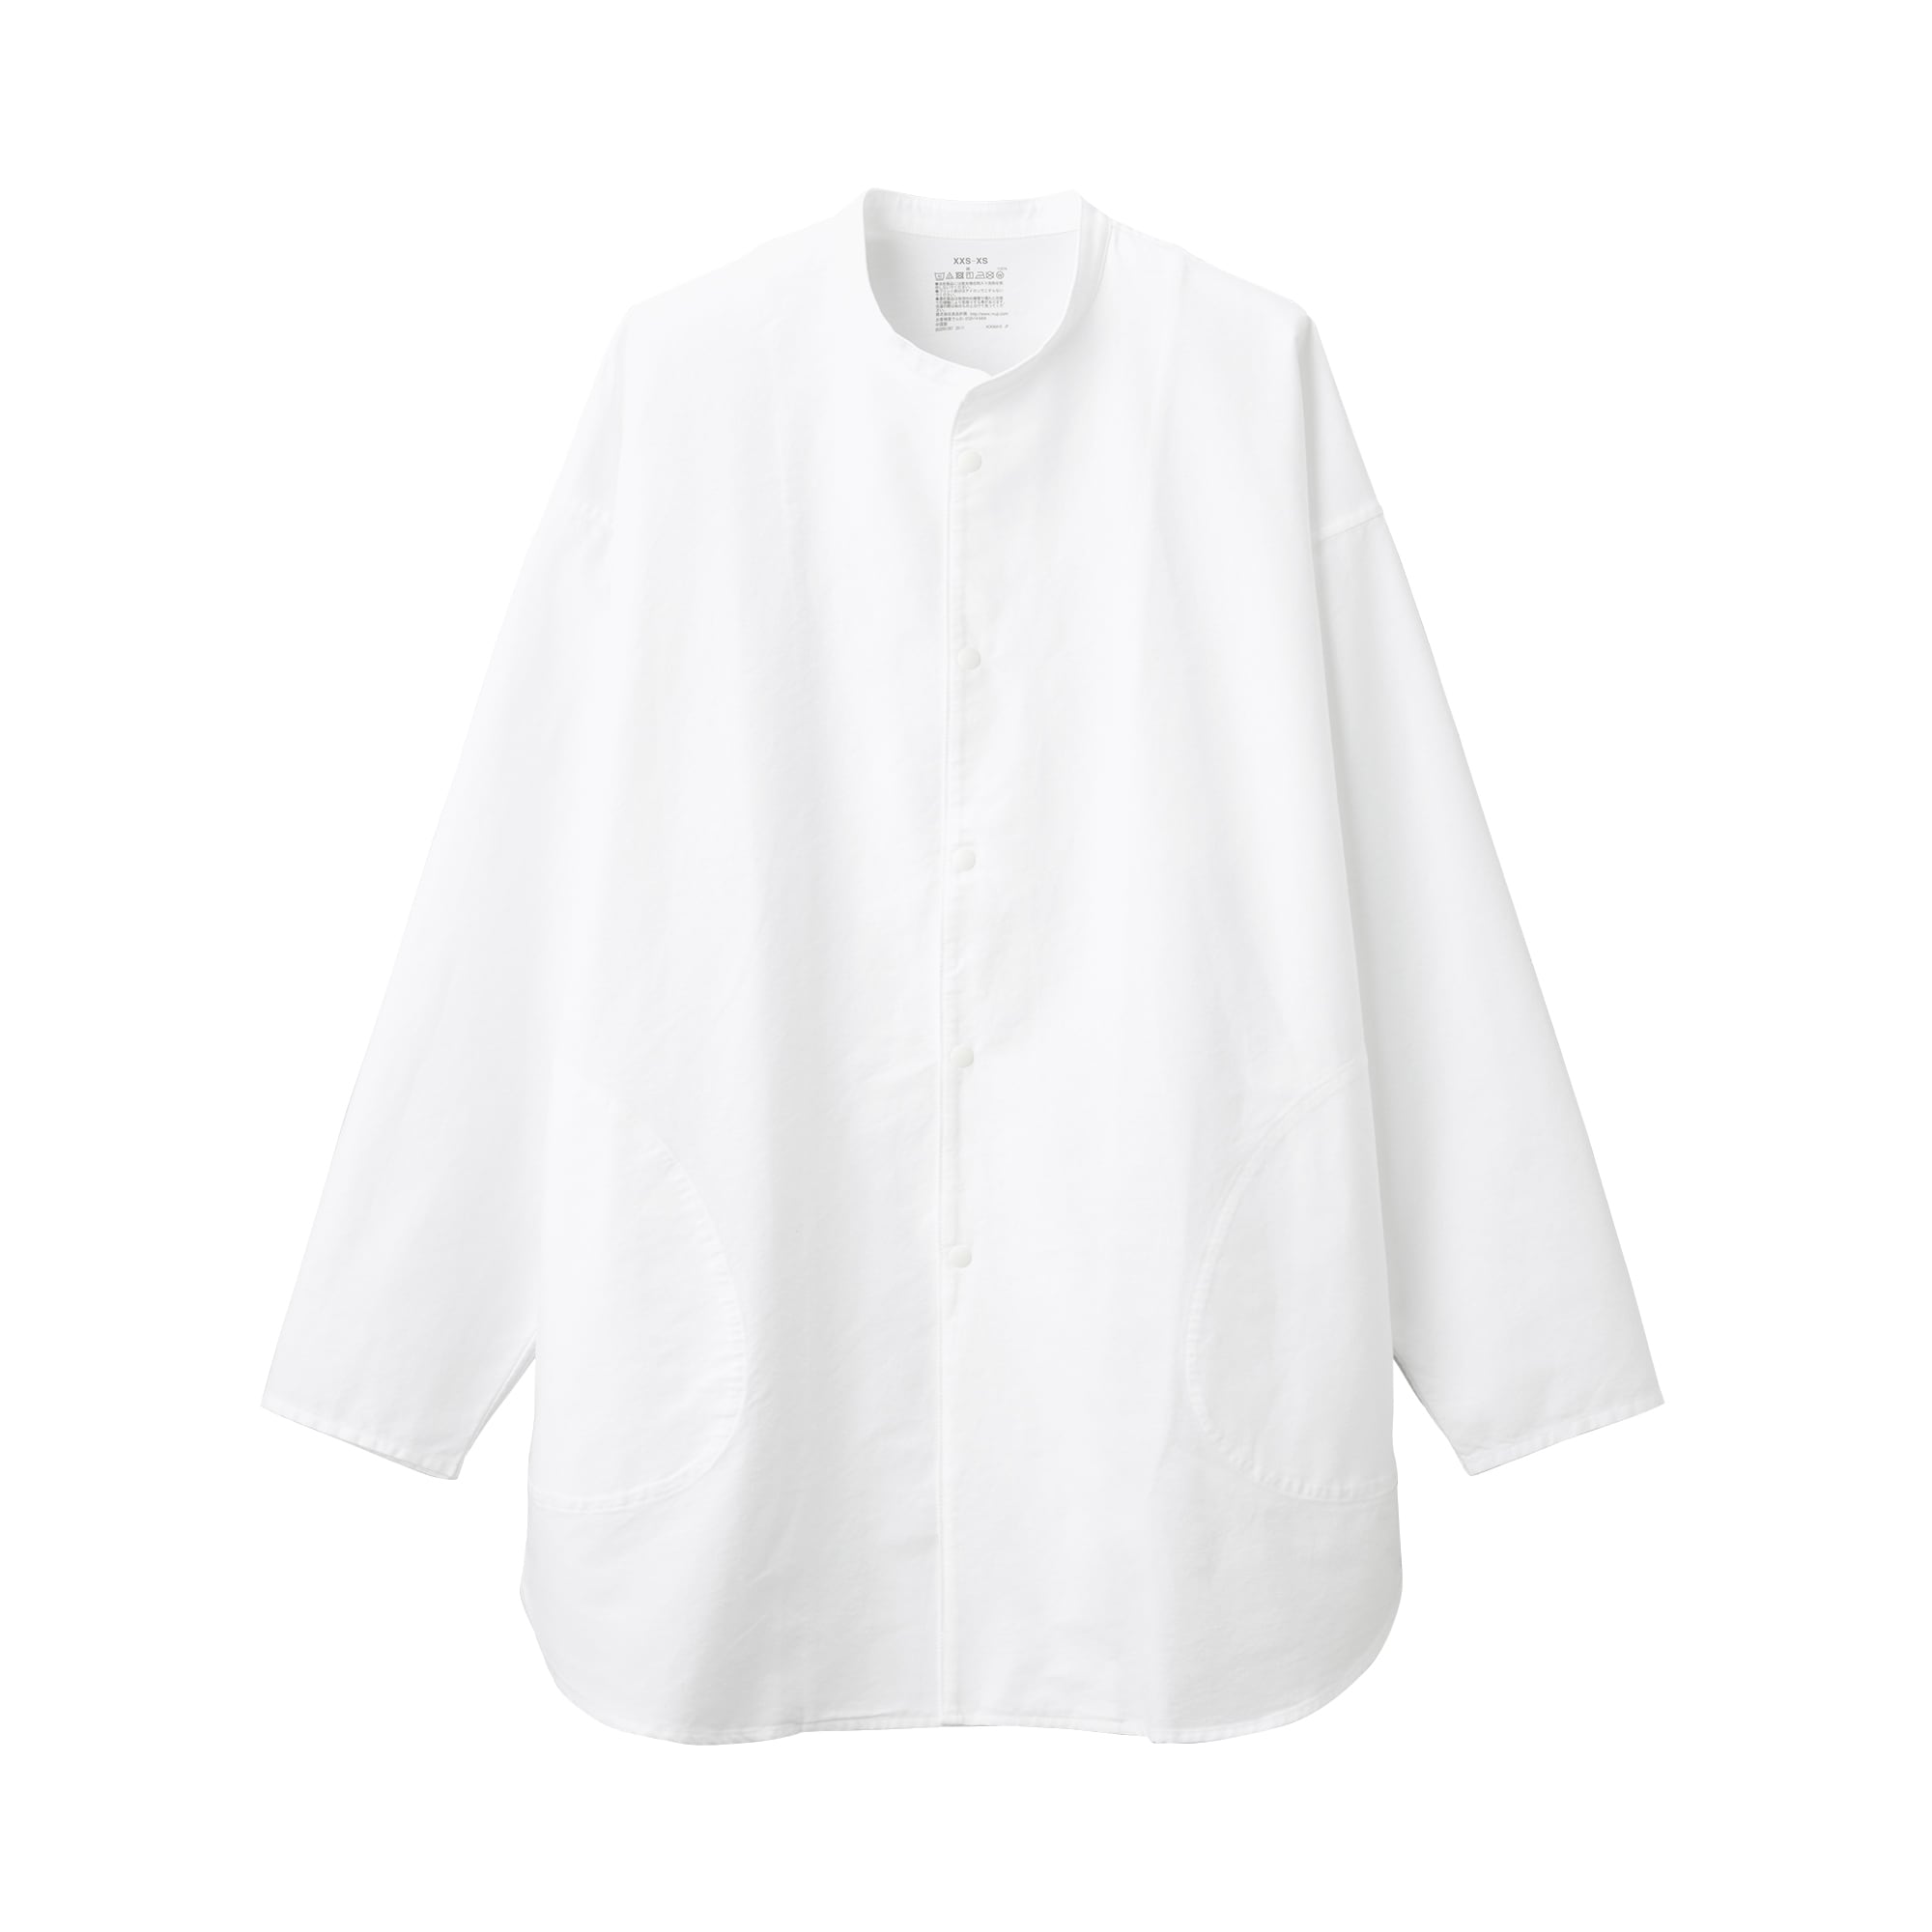 무인양품 일본 라보 워싱 루즈핏 튜닉 셔츠 XS 화이트